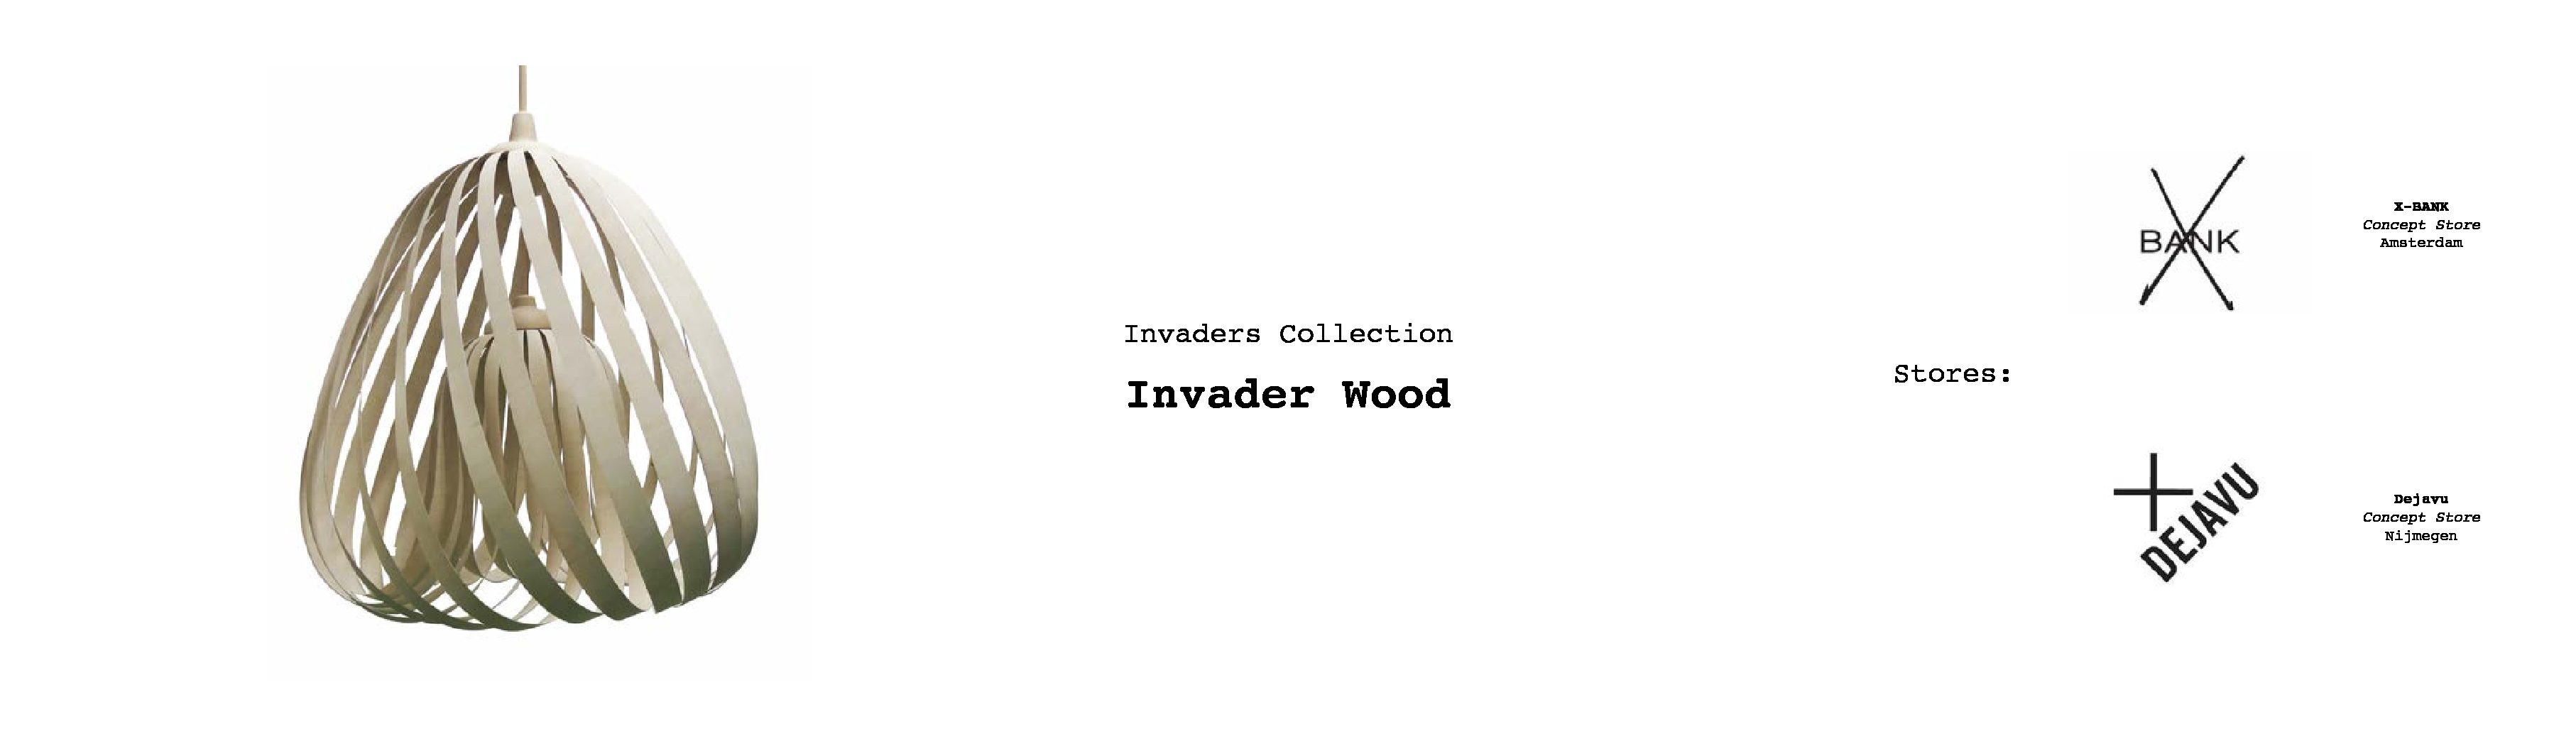 invader wood winkel-2